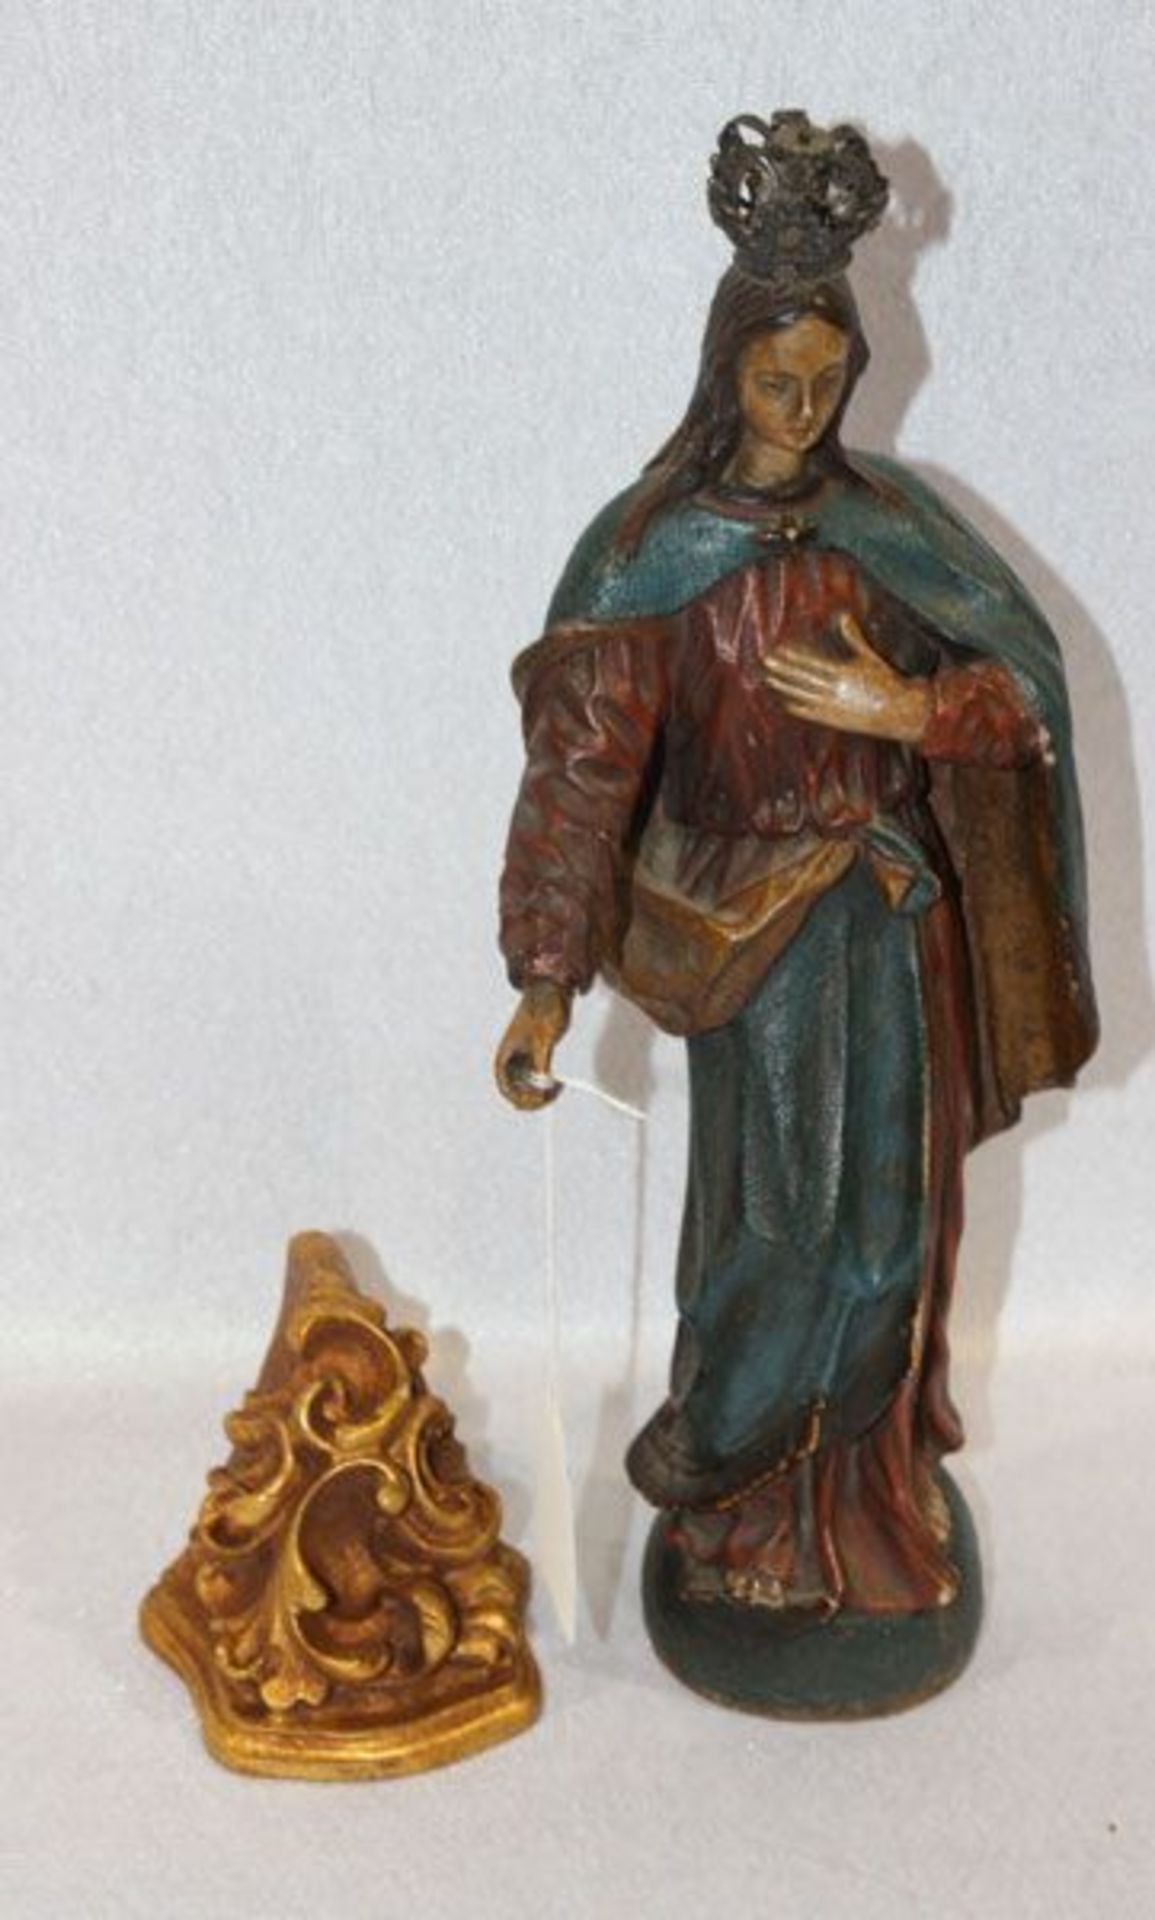 Holz Figurenskulptur 'Maria', farbig gefaßt und mit feiner Metallkrone, Fassung leicht berieben, 19.